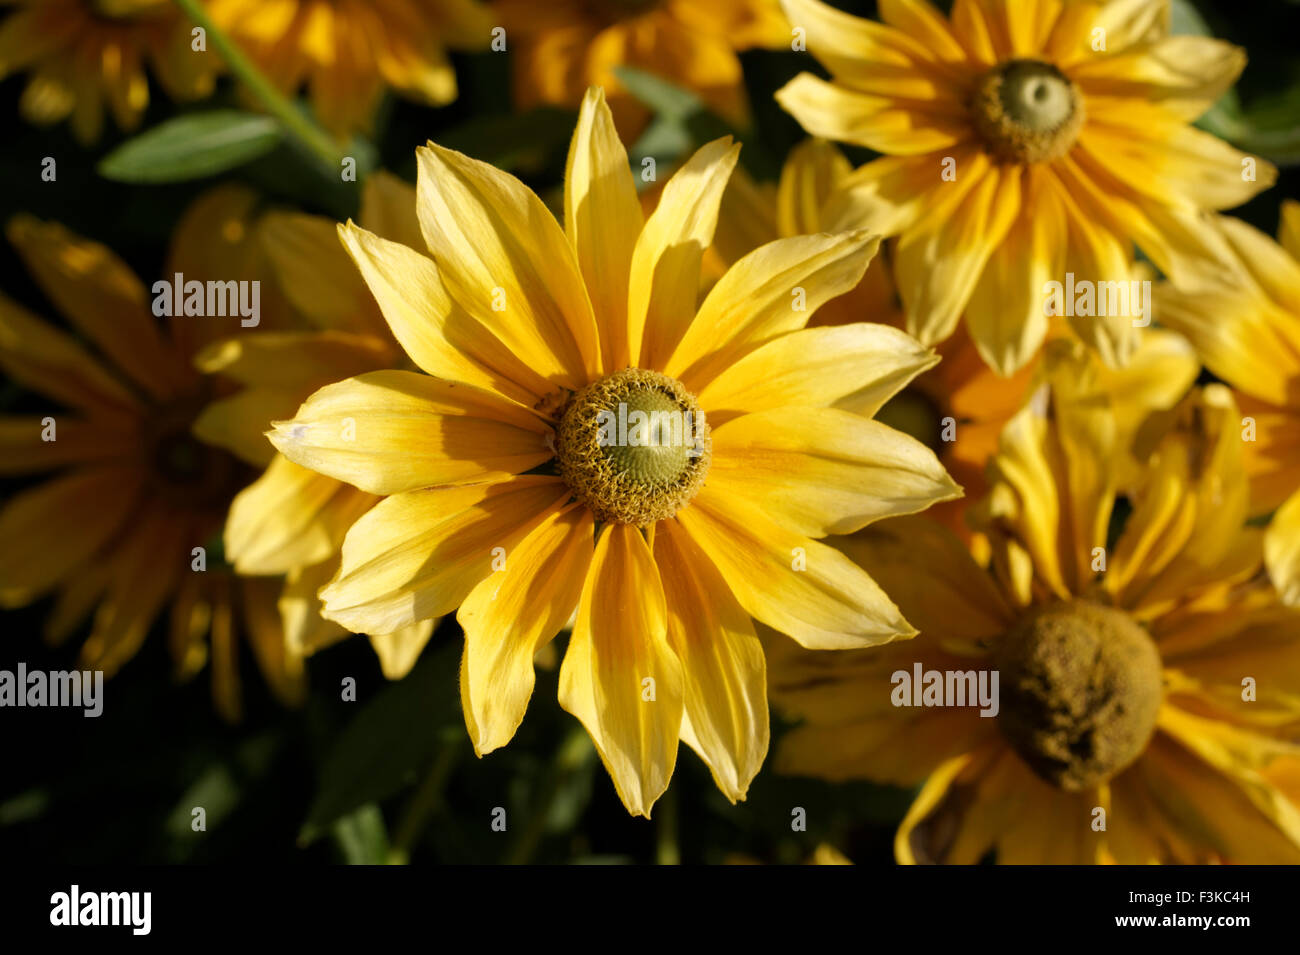 Rudbeckia hirta fiori o Prairie Sun, noto anche come Gloriosa Daisy o black-eyed Susan fotografato in tarda stagione di crescita Foto Stock